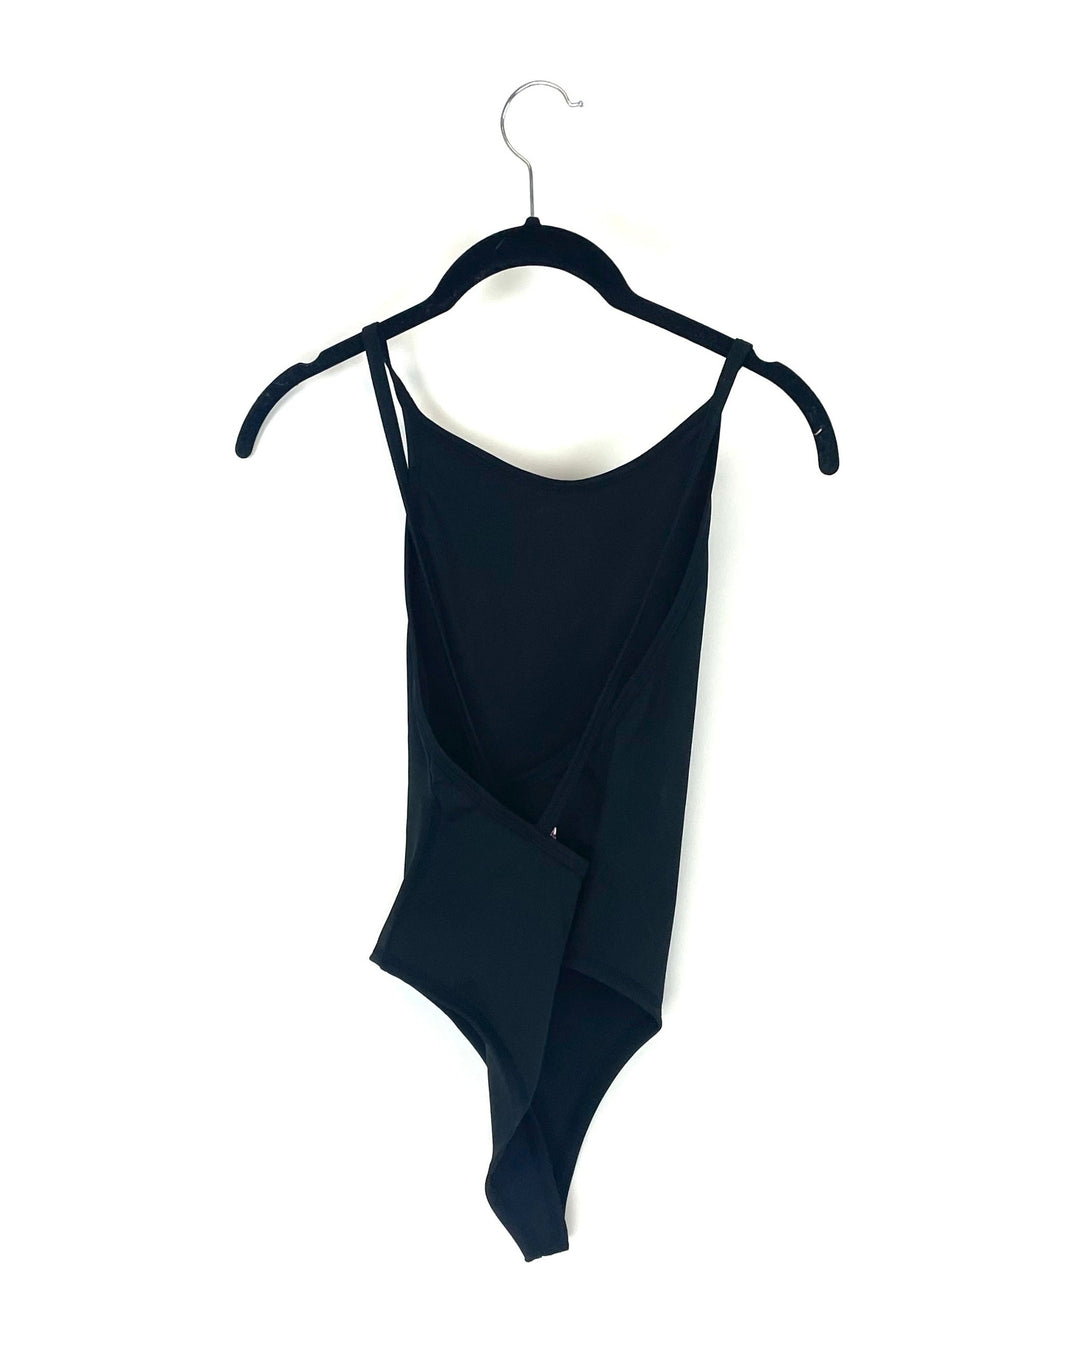 Black Bodysuit - Size 0-2, 4-6, 8-10